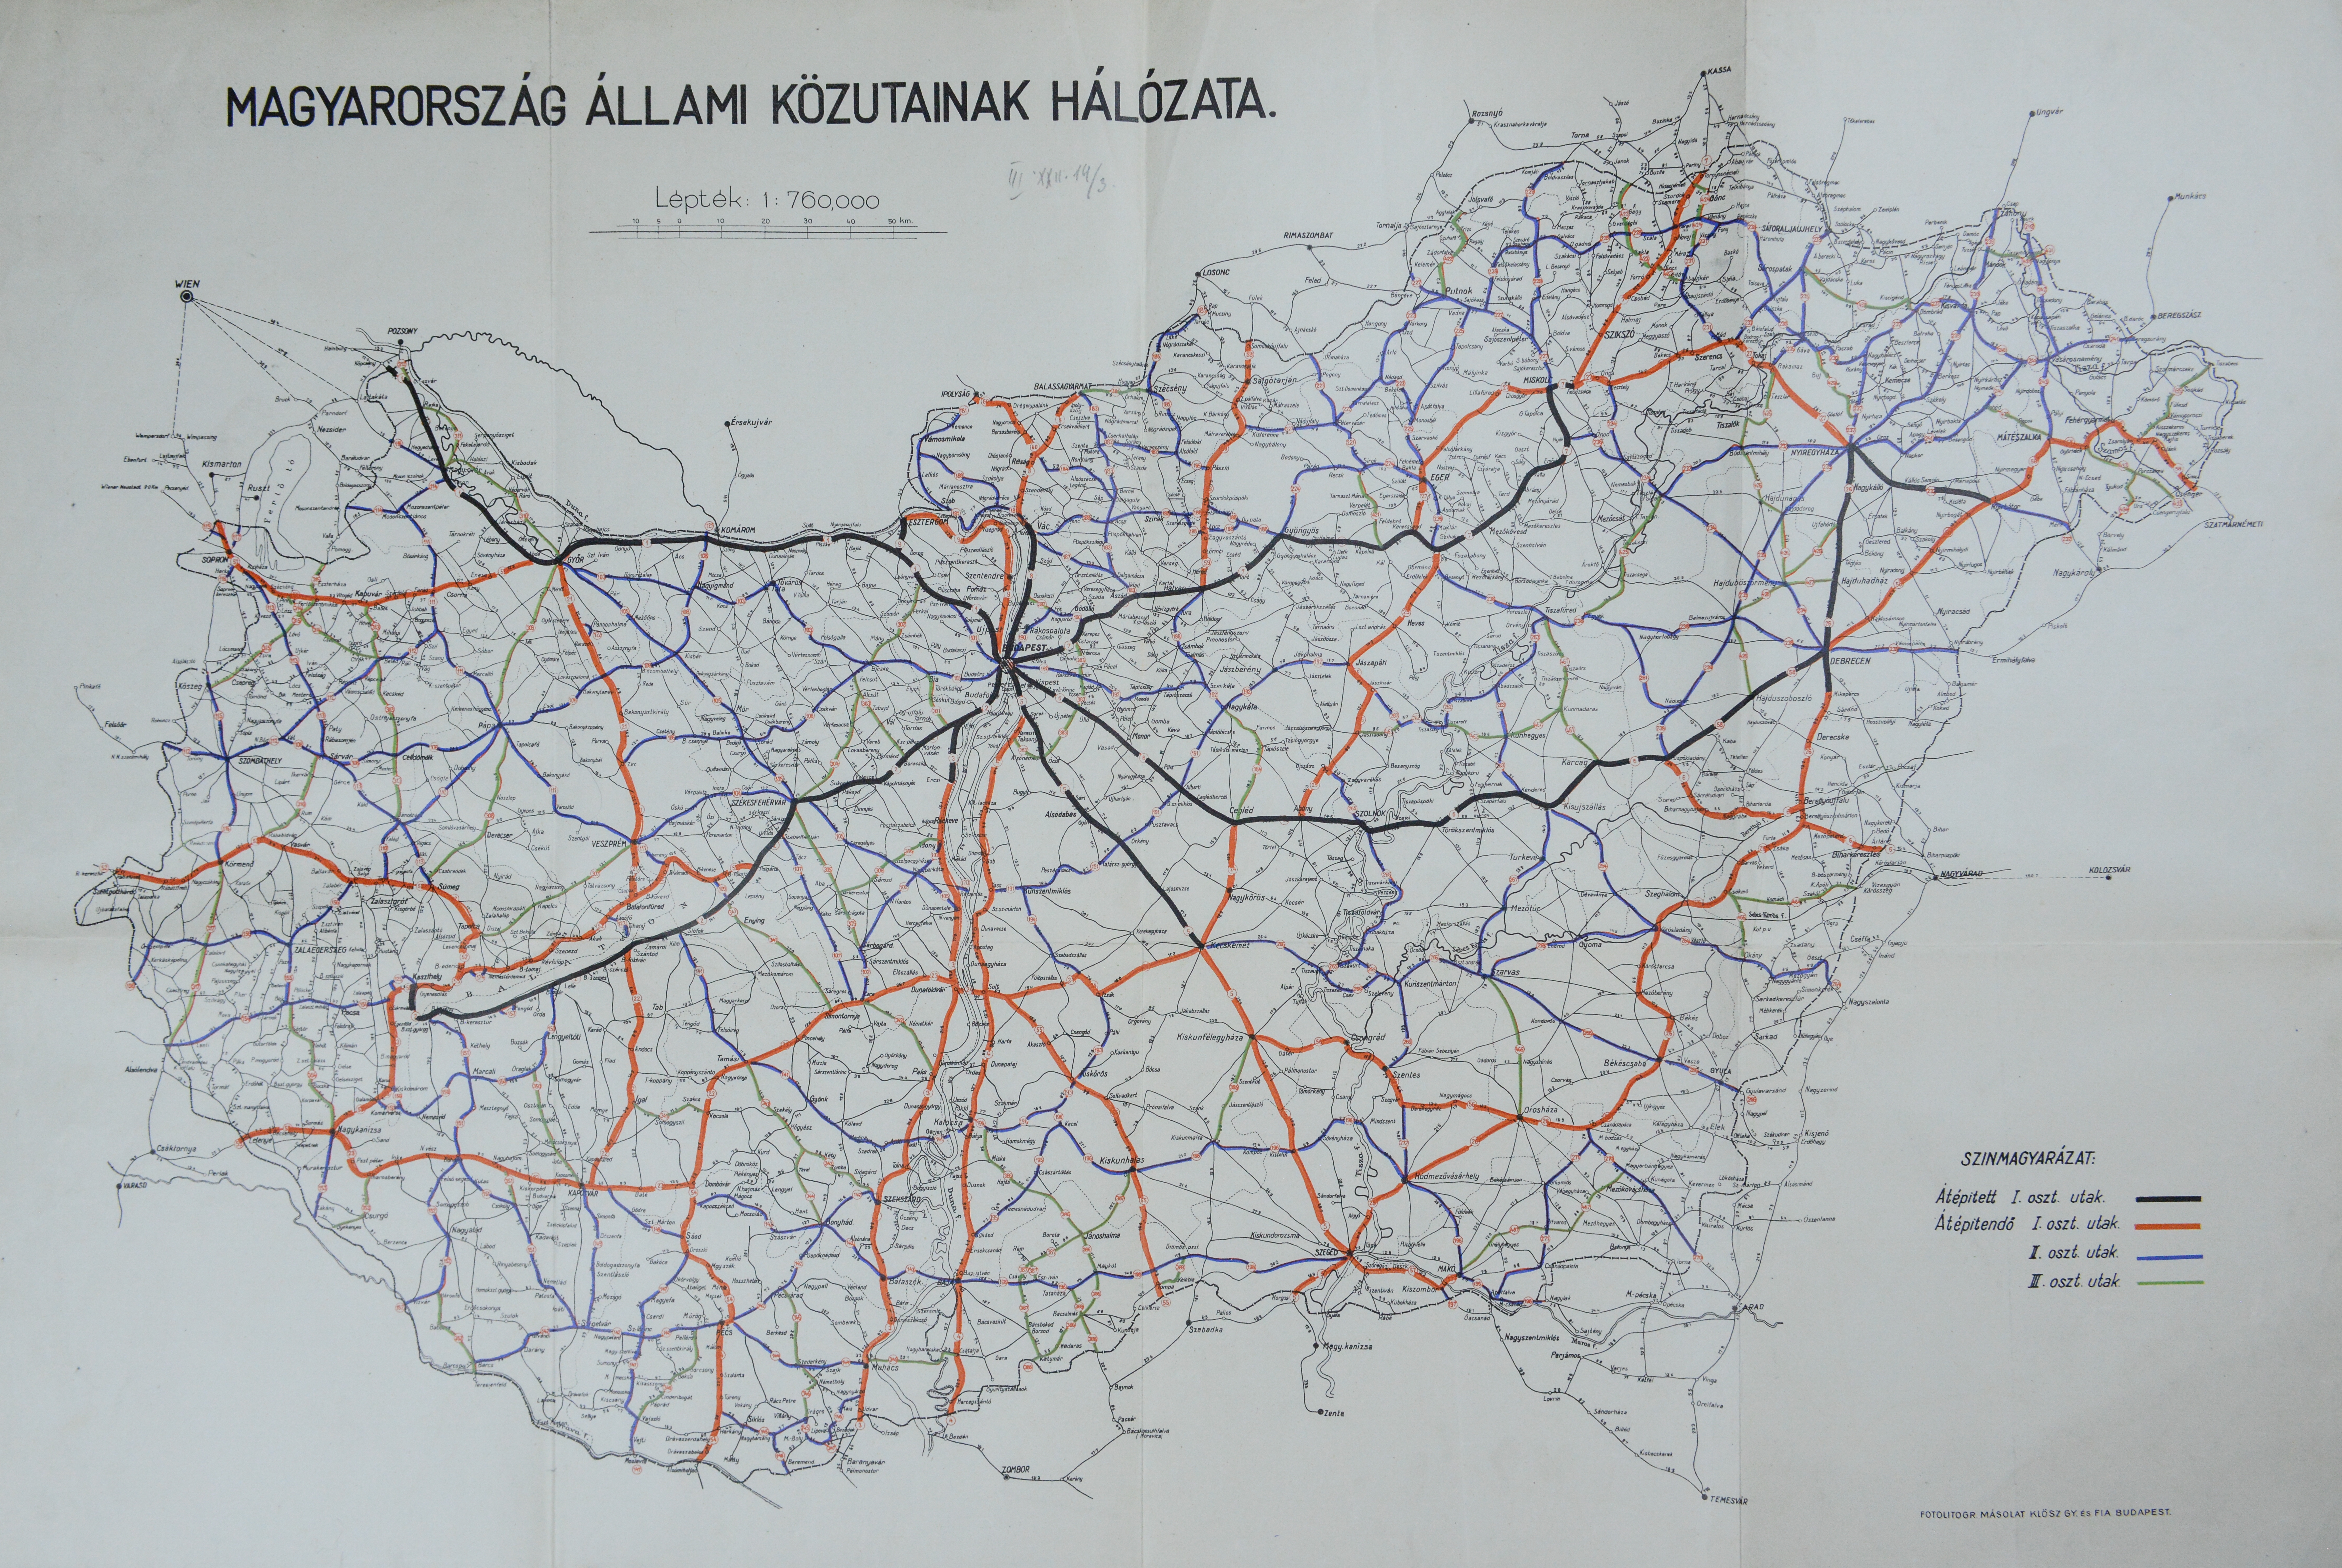 Magyarország állami közutainak hálózata térkép